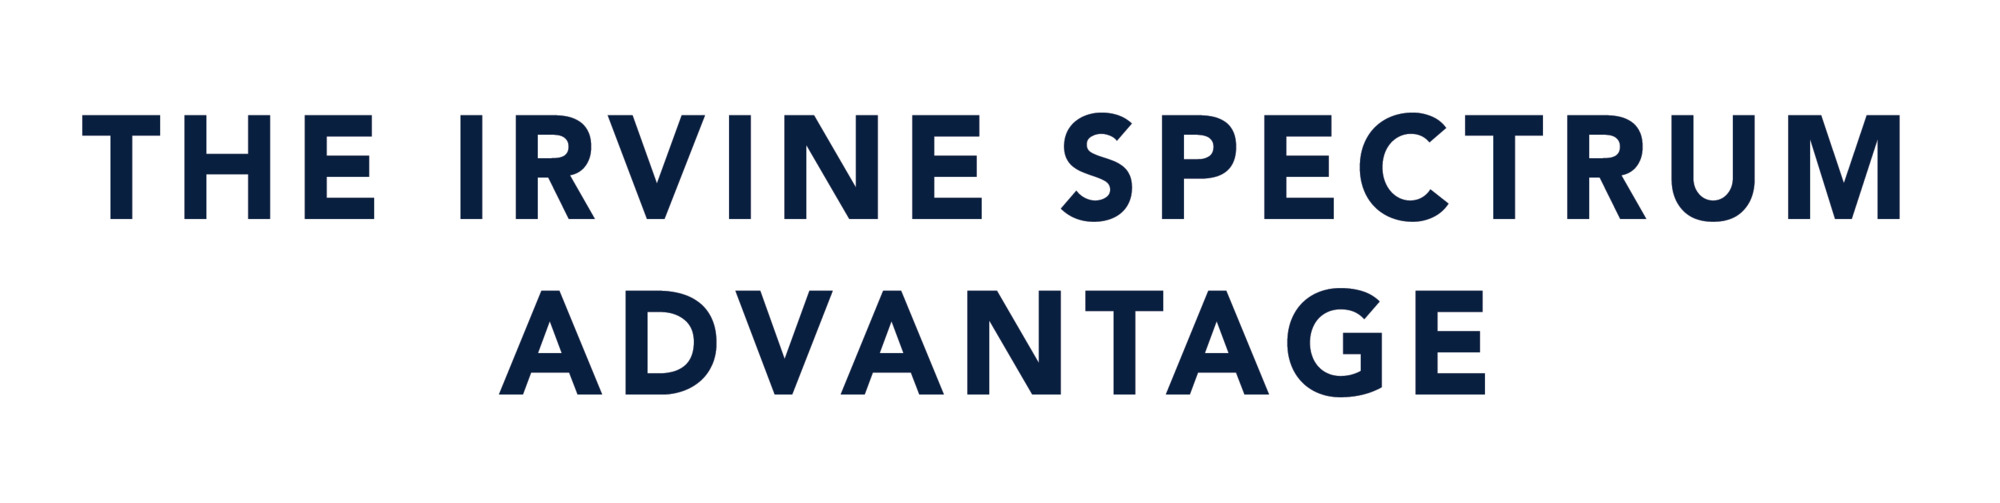 Irvine_spectrum_advantage.png